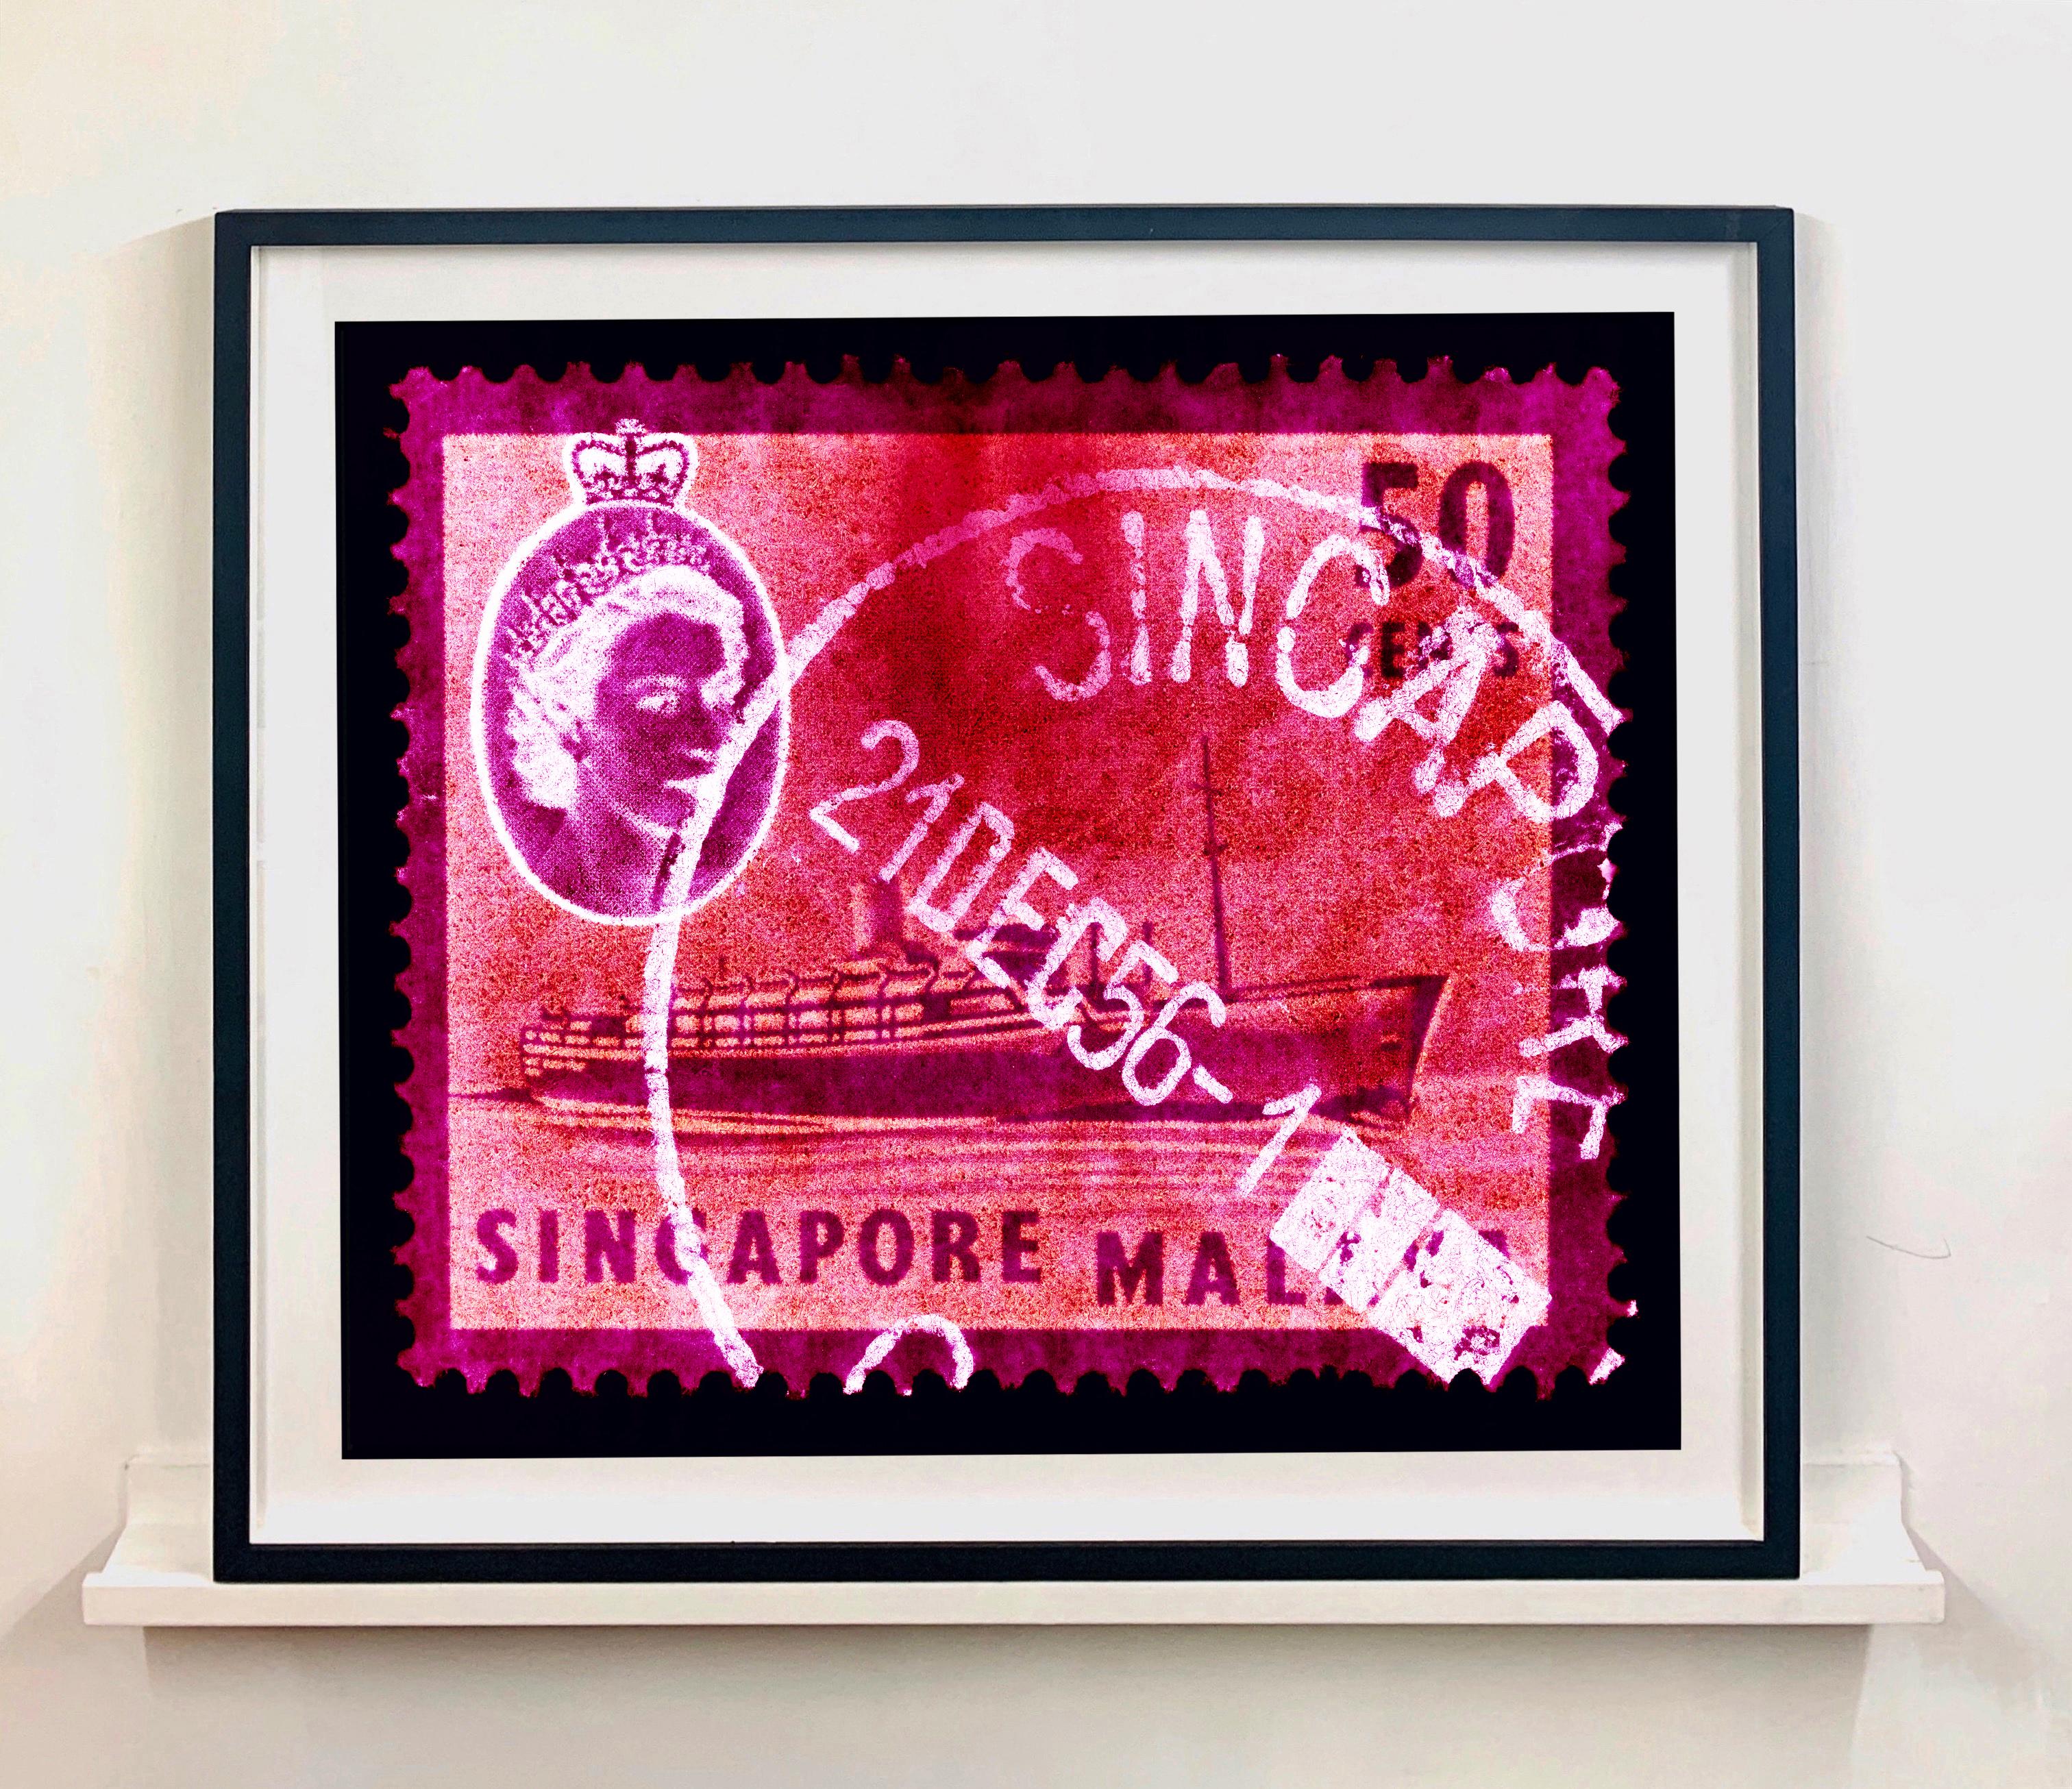 Aus der Singapur-Serie 2018, Postkarten aus der Ferne.

Dieses Kunstwerk ist eine auf 25 Exemplare limitierte Auflage eines fotografischen Glanzdrucks. Begleitet von einem signierten und nummerierten Echtheitszertifikat. 
Auf Wunsch können wir eine